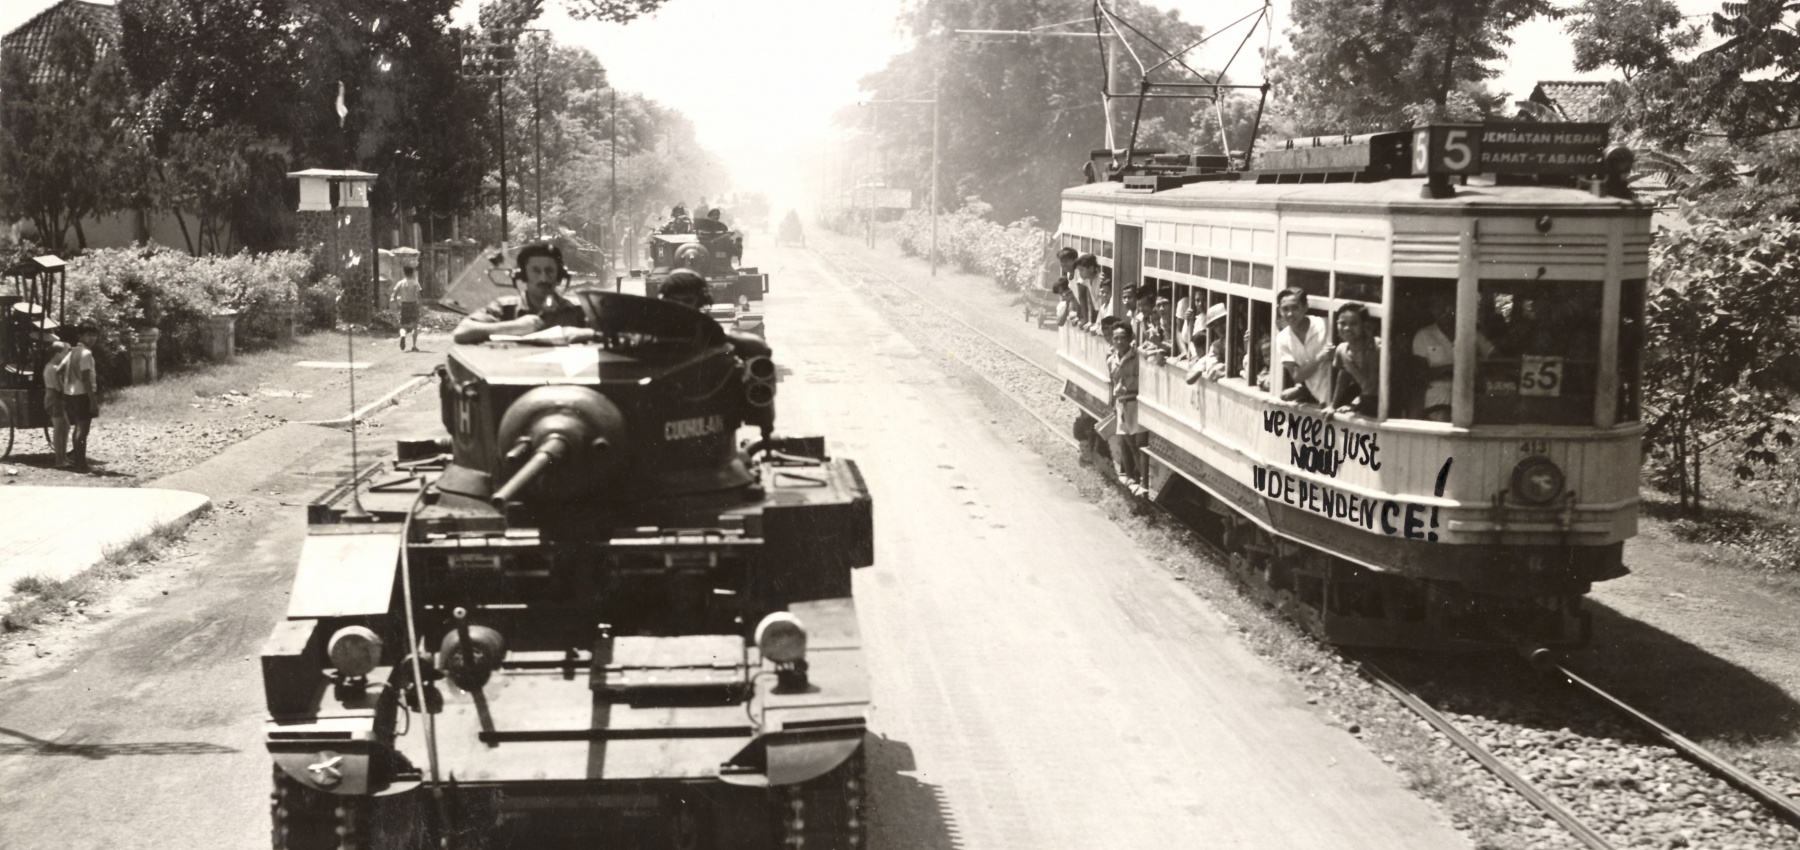 Britse tanks patrouilleren in de straten van Batavia. Op de tram onafhankelijkheidsleuzen. (Opname: 29-10-1945) BeeldbankWO2/NIOD